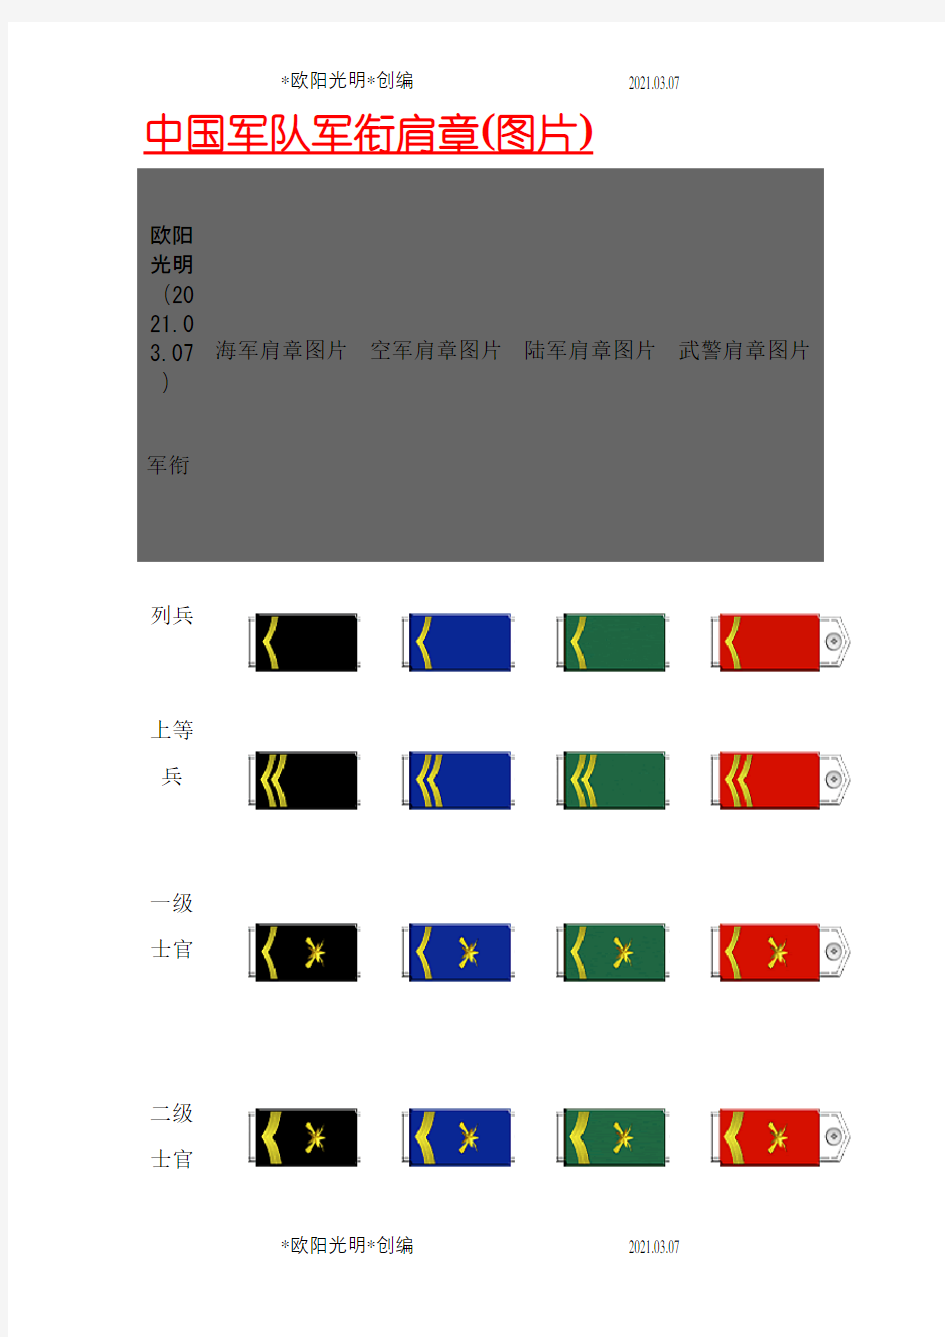 2021年中国军队军衔肩章(图片)